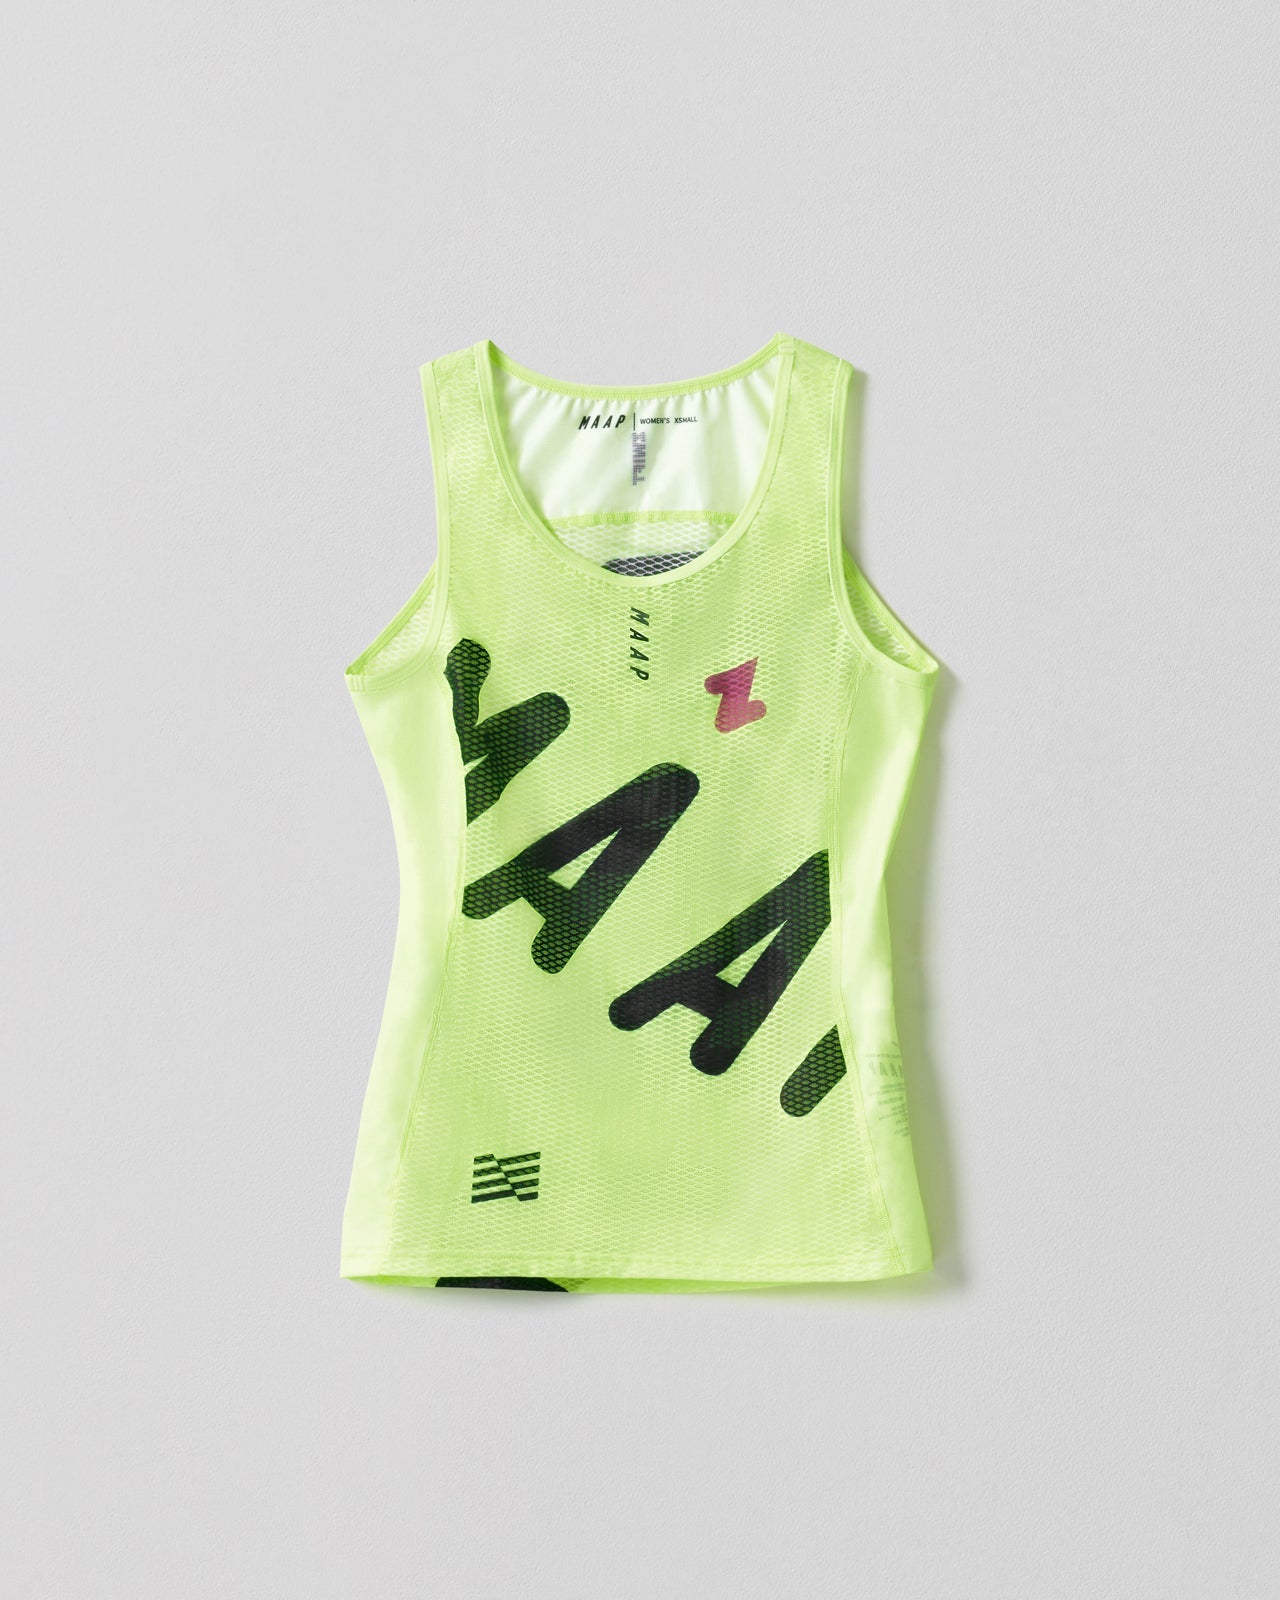 MAAP x ZWIFT 2022 Women's Base Layer Vest